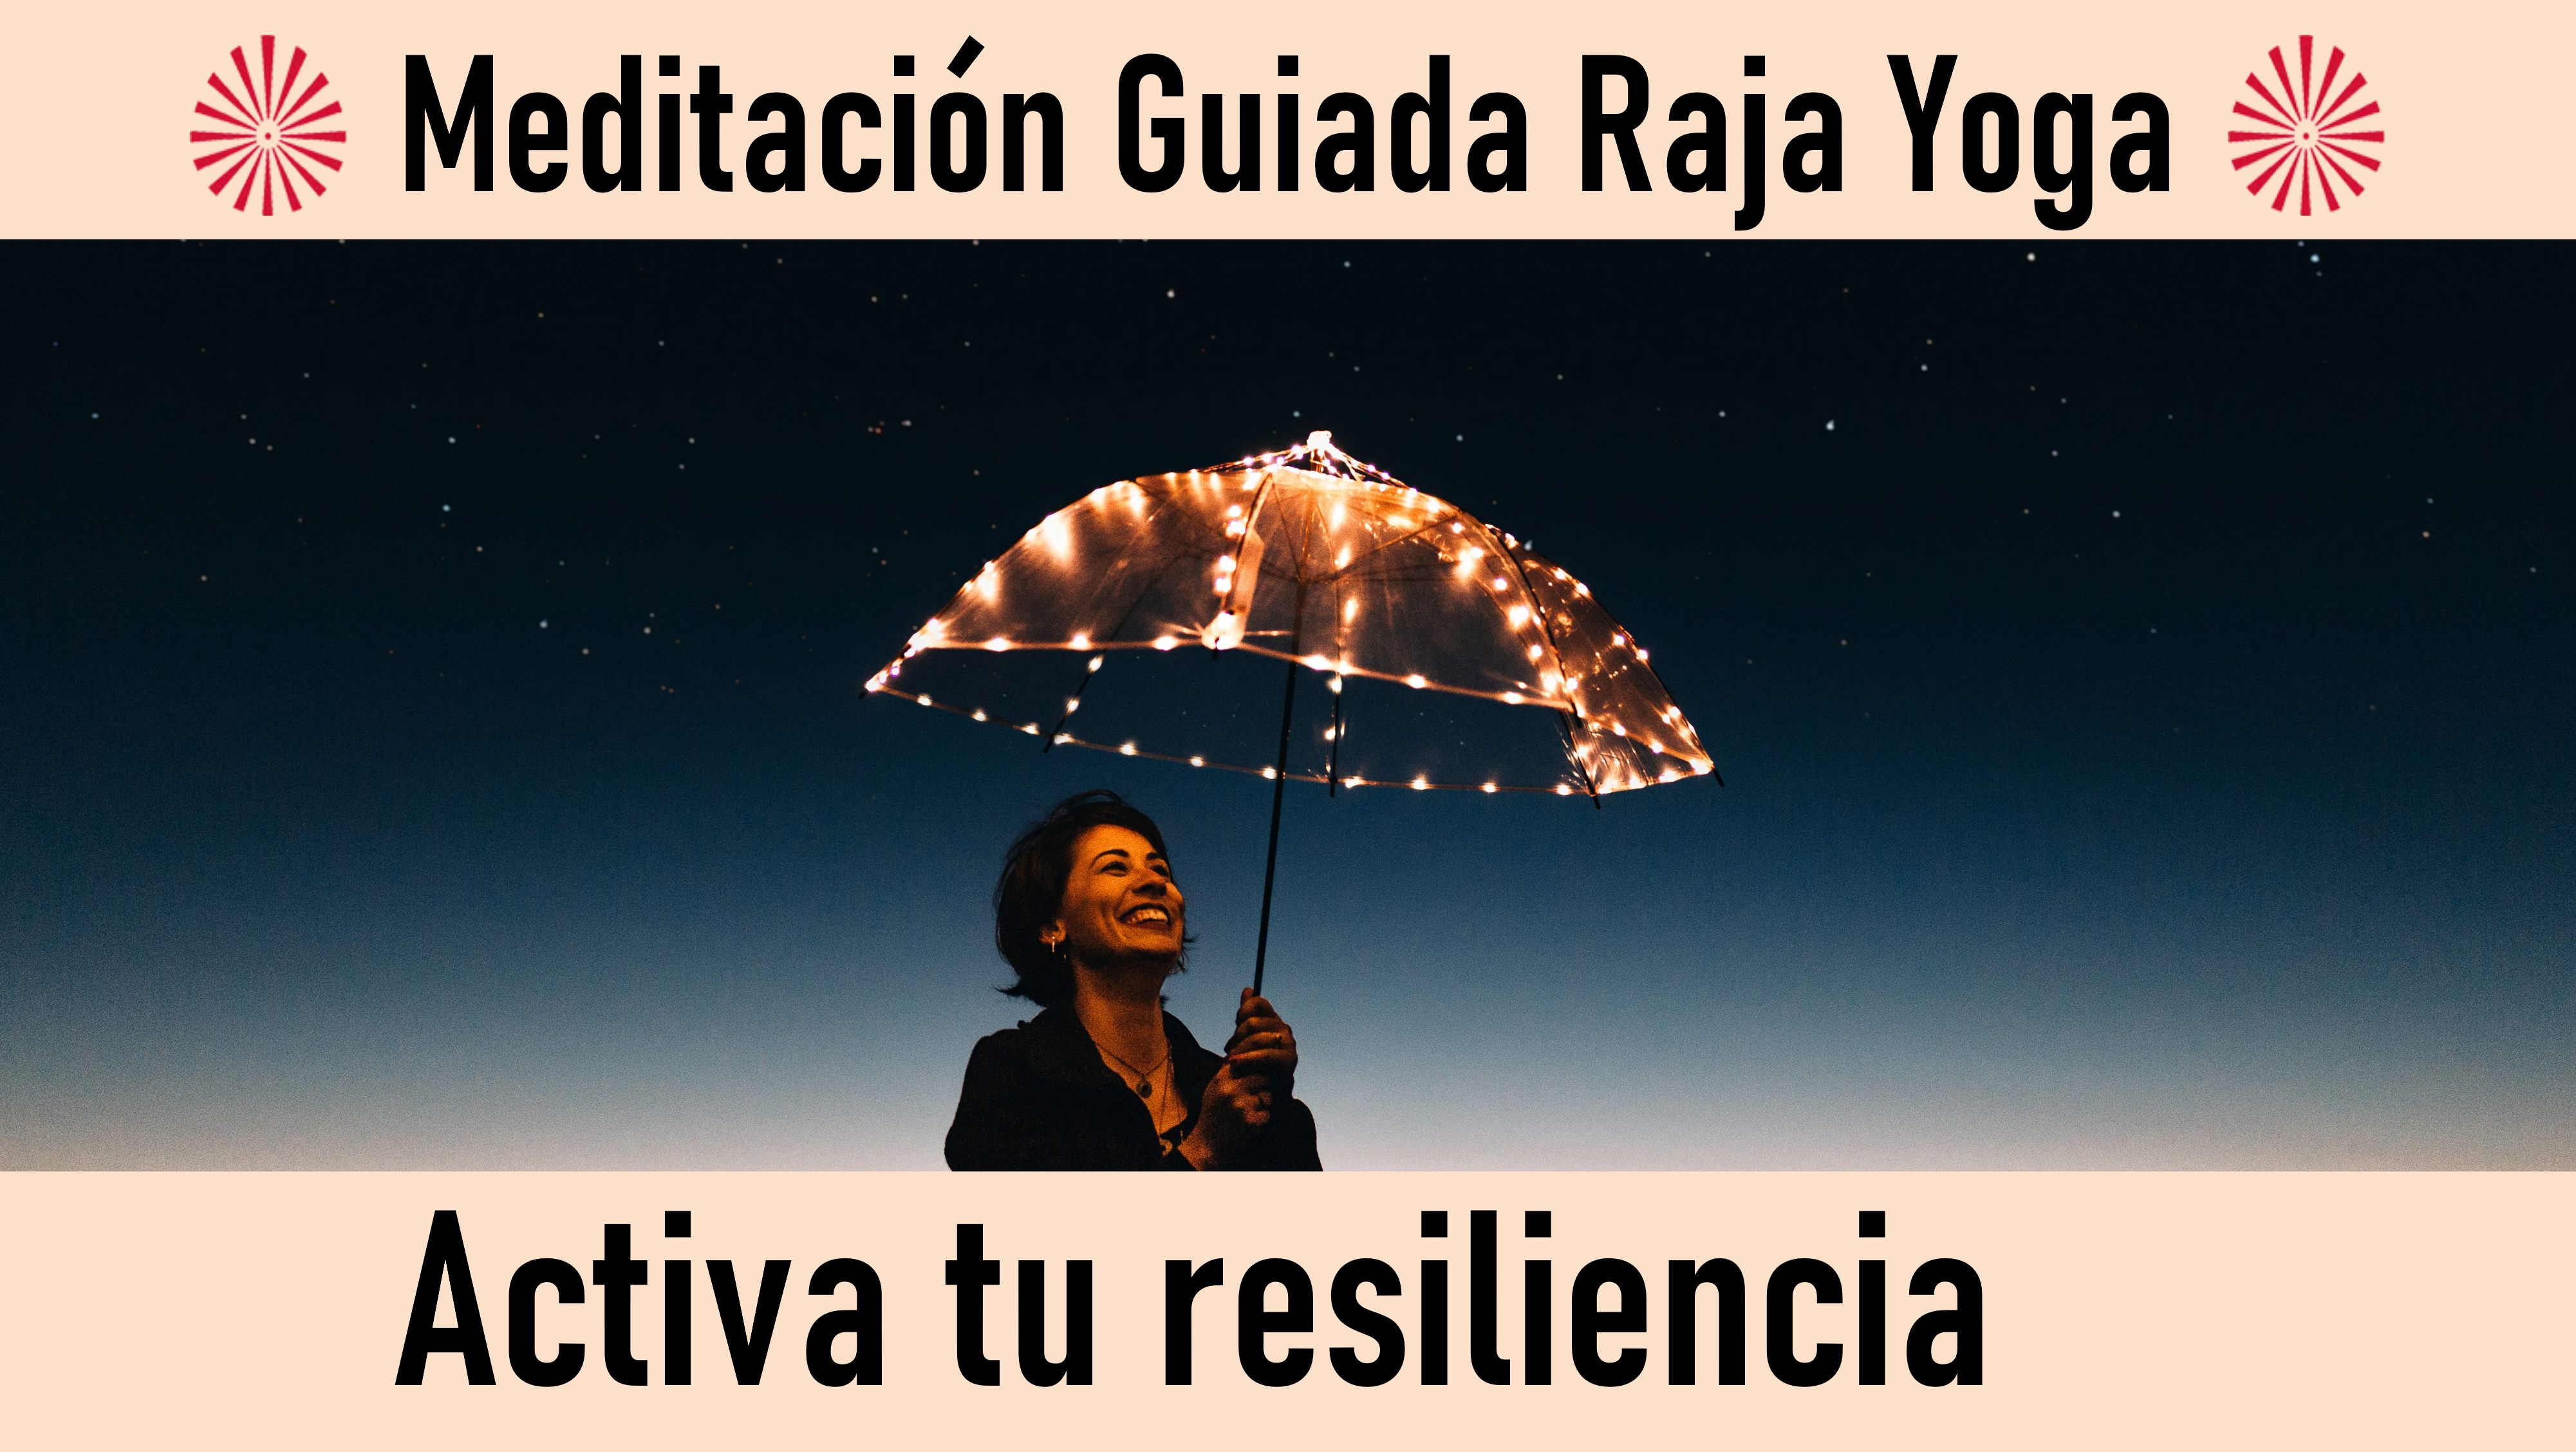 Meditación Raja Yoga:  Activa tu resiliencia (16 Octubre 2020) On-line desde Madrid